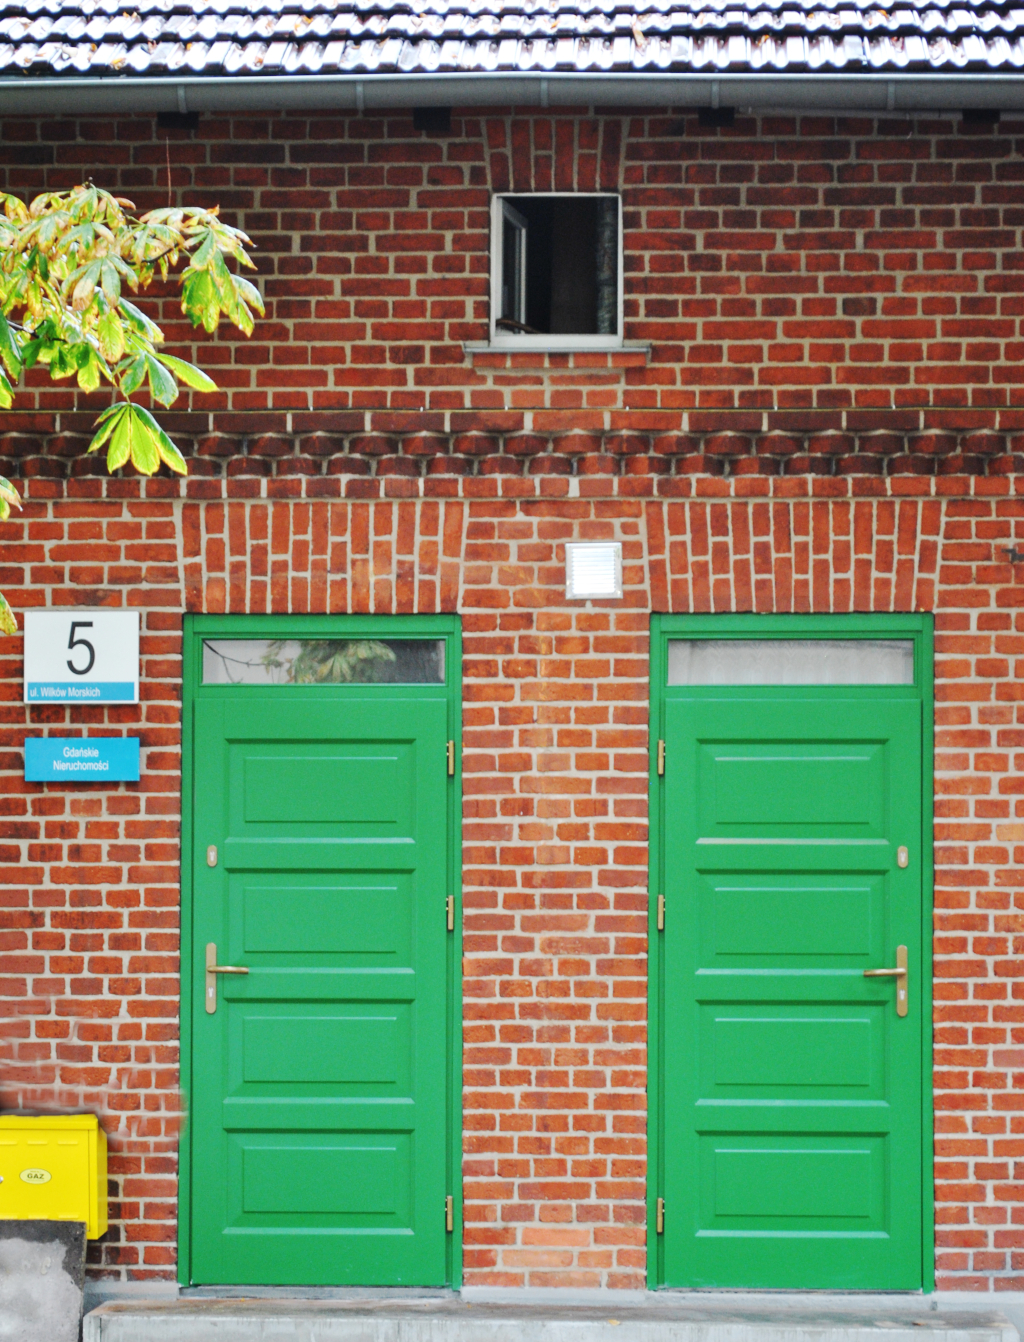 na zdjęciu dwa wejścia do budynku  z tablica numeryczną. W dużym przybliżeniu widoczna, nowa stolarka drzwiowa w kolorze intensywnej zieleni. 